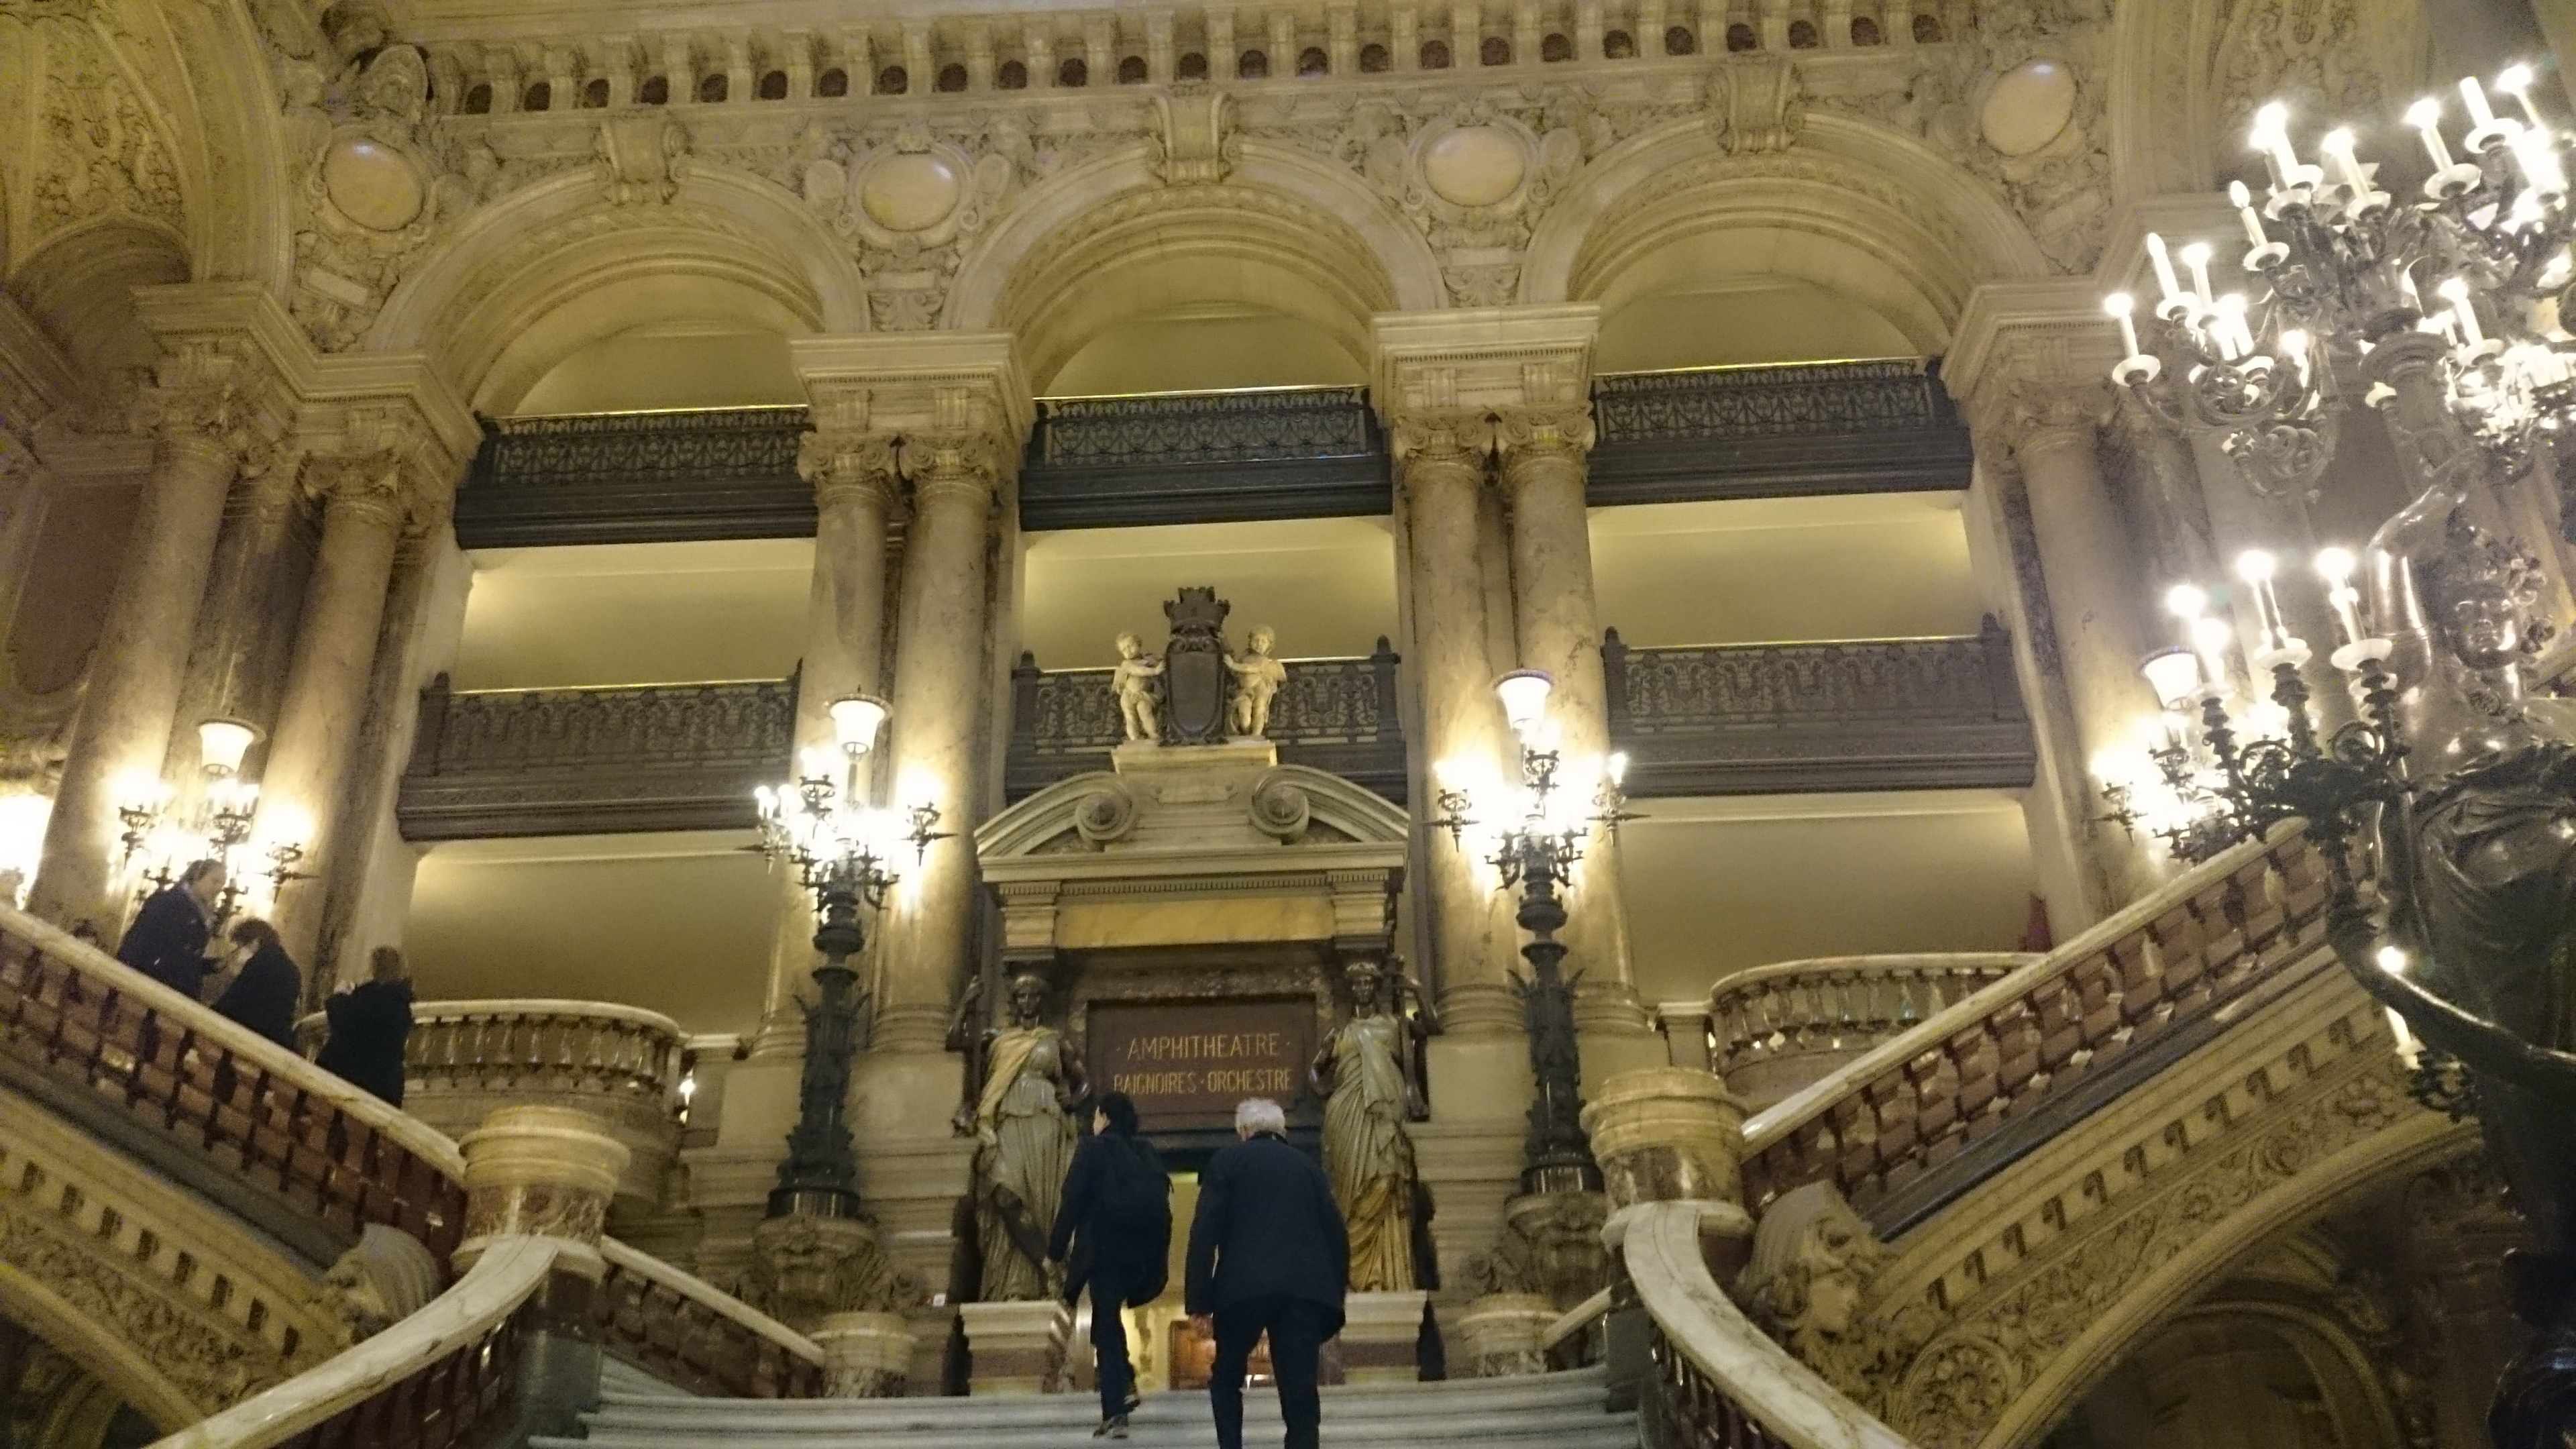 dsc 1007 - Una visita a la Opera de Paris (Palais Garnier)